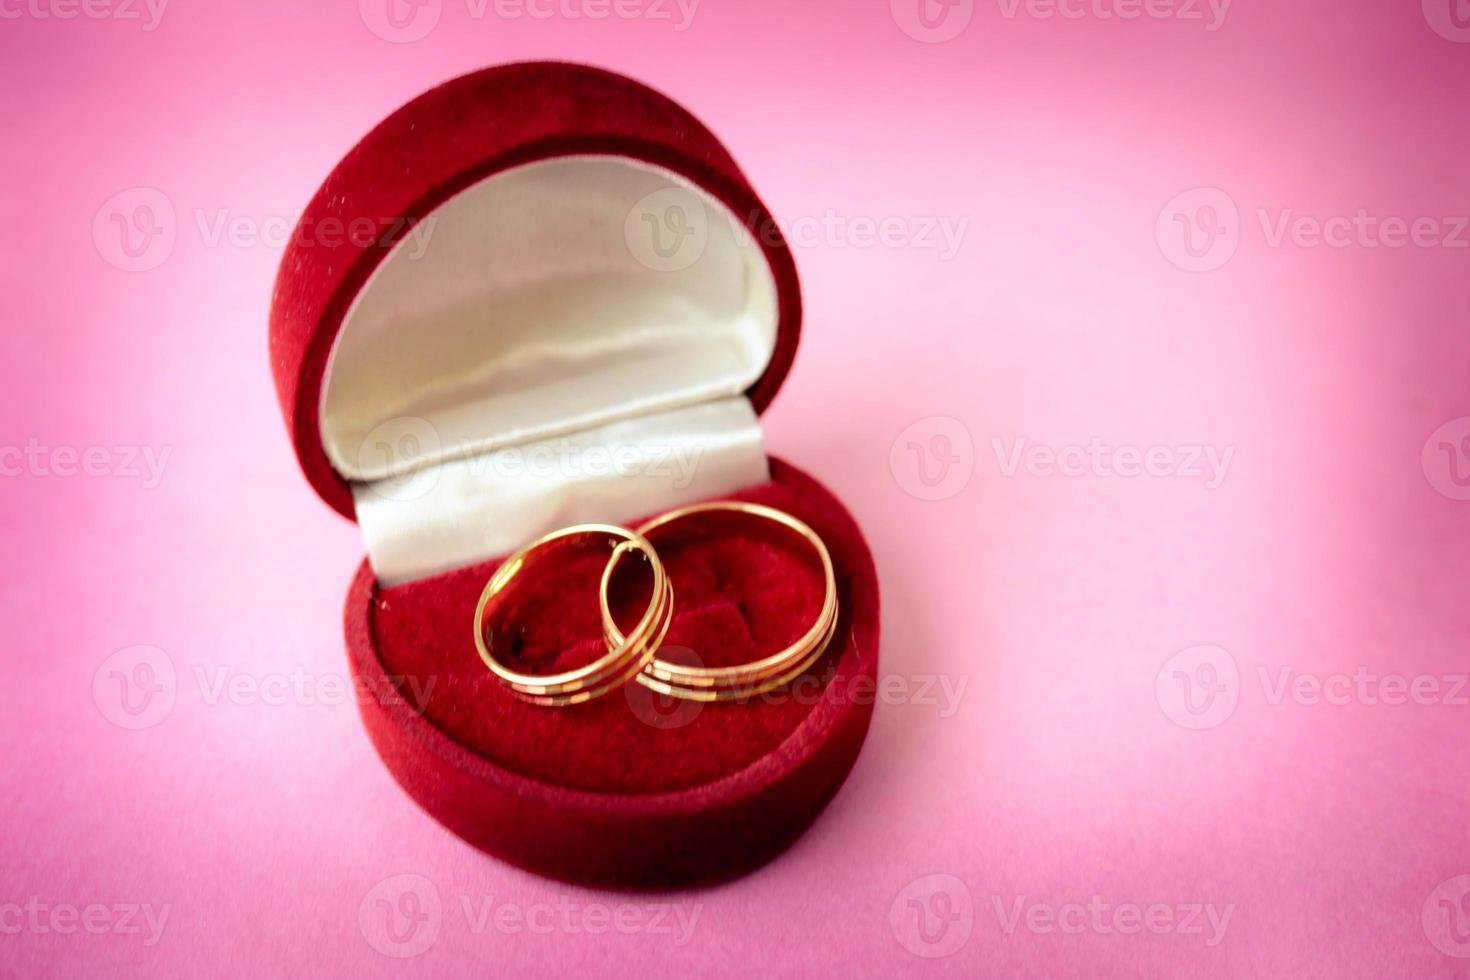 eine wunderschöne rote festliche Geschenkbox aus Samt für zwei Verlobungsringe, Trauringe mit edlen runden Edelflorringen aus Gold. konzept heiratsantrag, hochzeit, verlobung foto